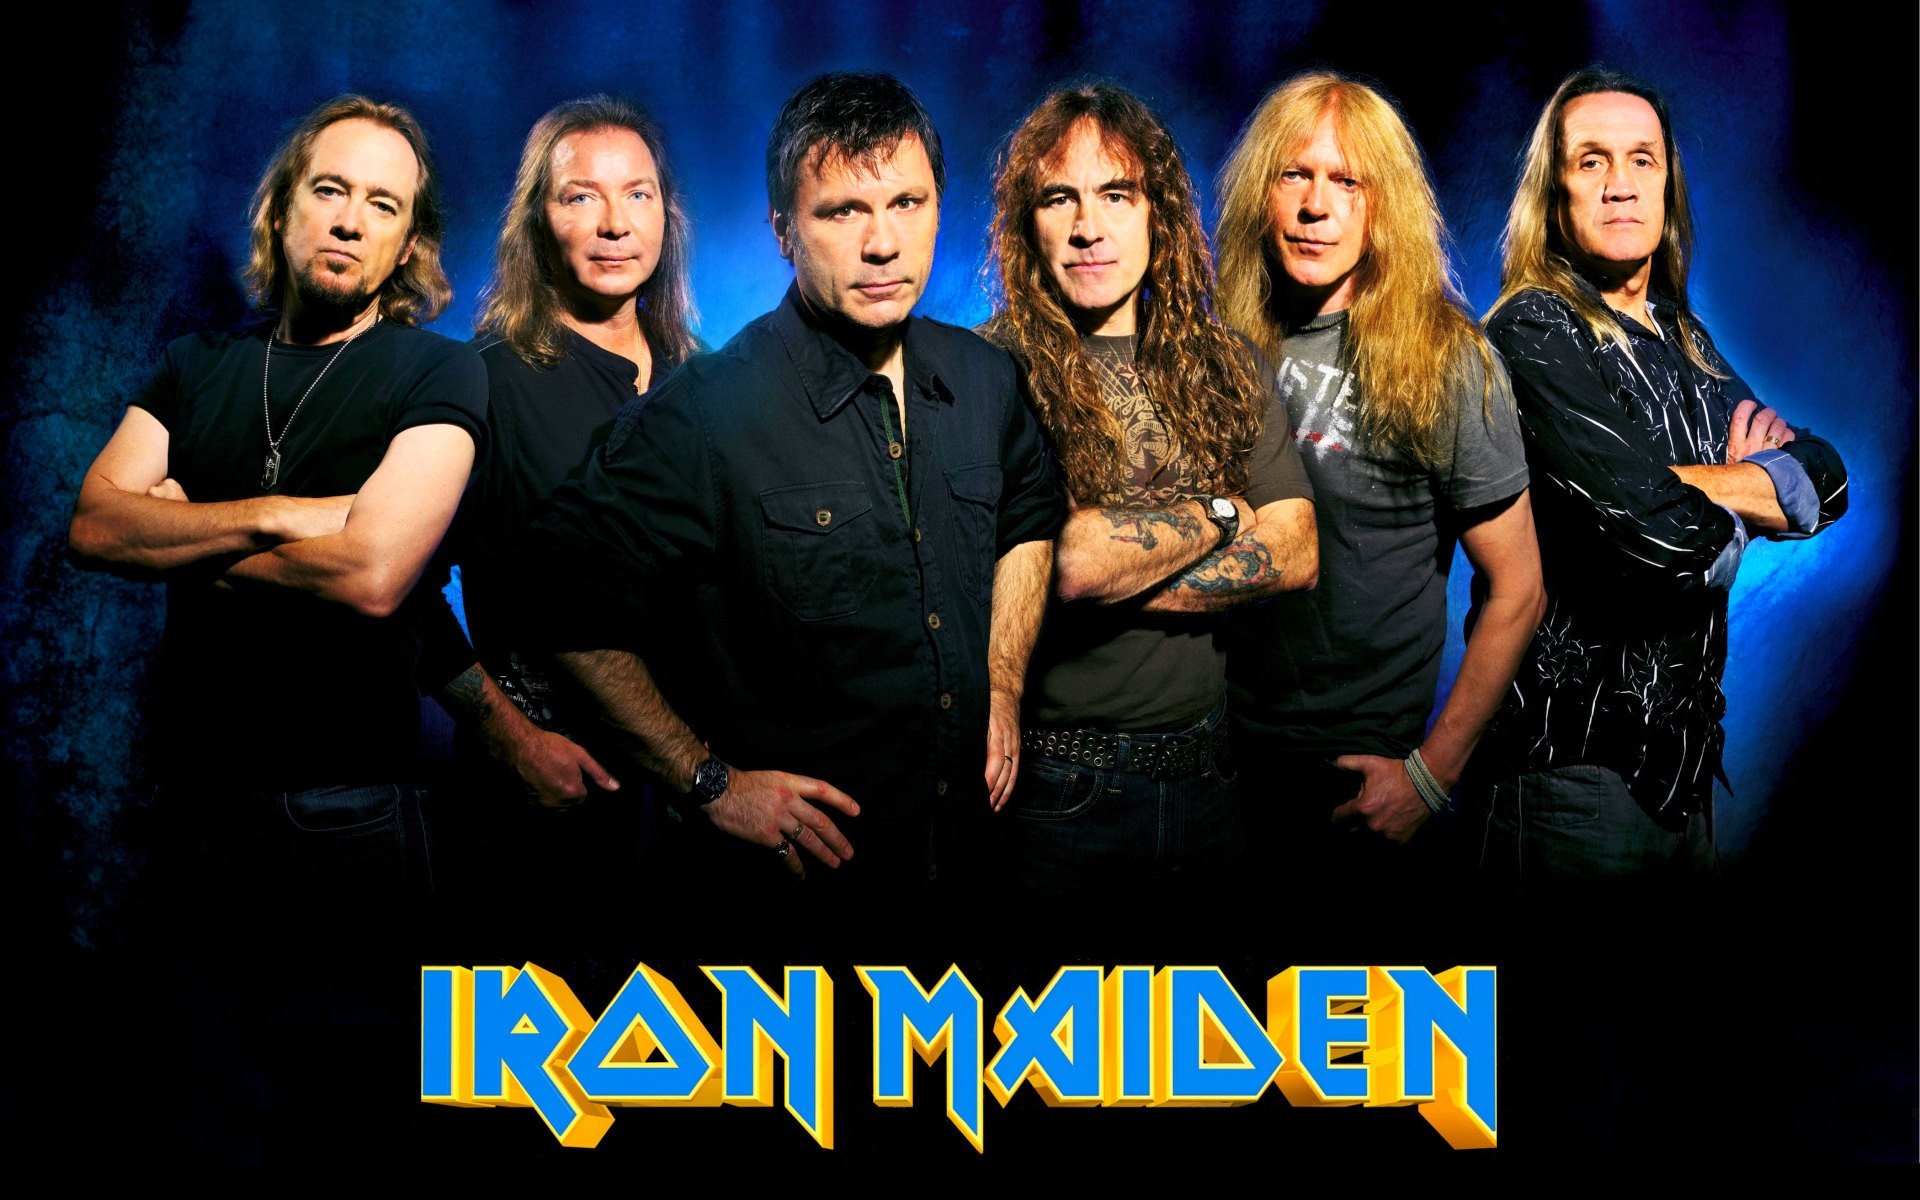 Dave Murray musician, Iron Maiden band, Top backgrounds, 1920x1200 HD Desktop